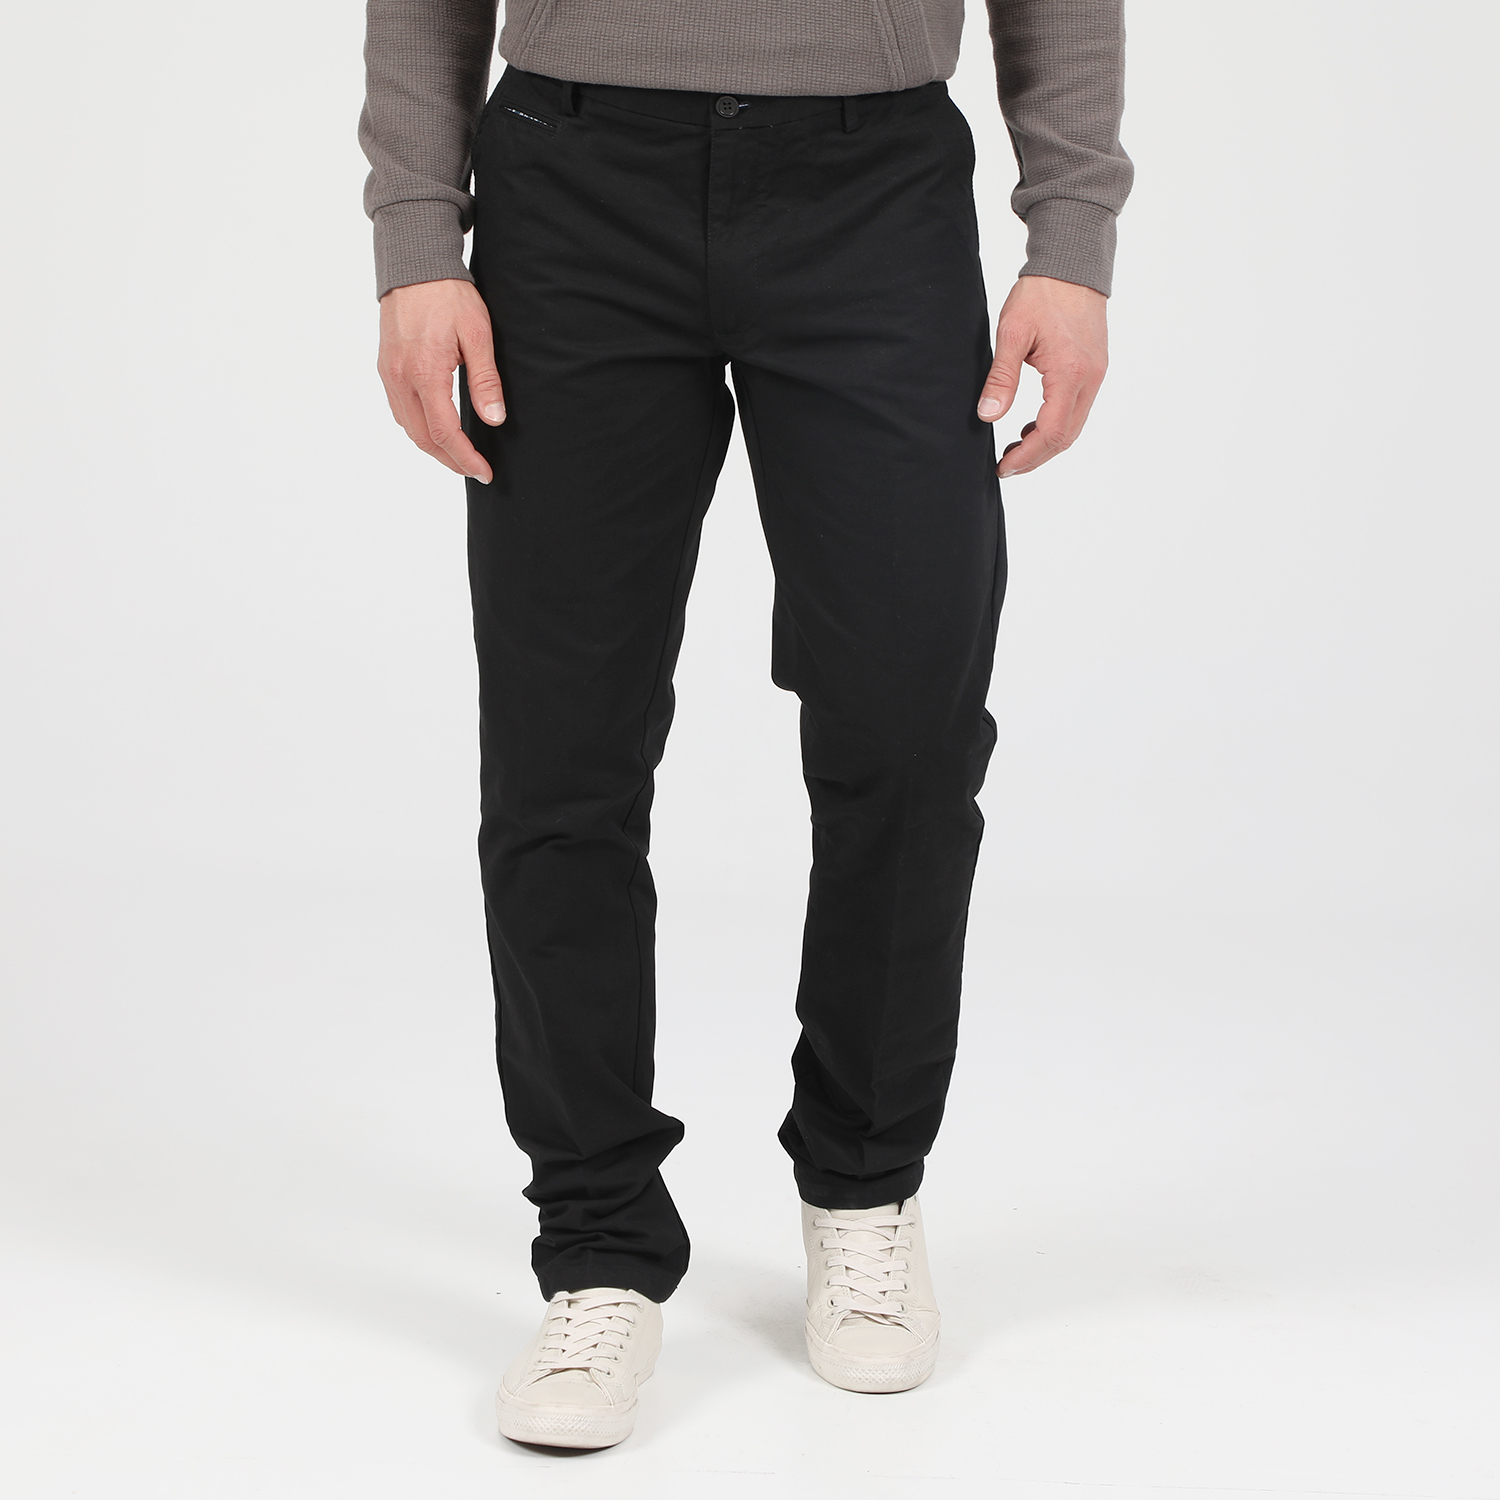 Ανδρικά/Ρούχα/Παντελόνια/Chinos MARTIN & CO - Ανδρικό chino παντελόνι MARTIN & CO SLIM CHINOS μαύρο